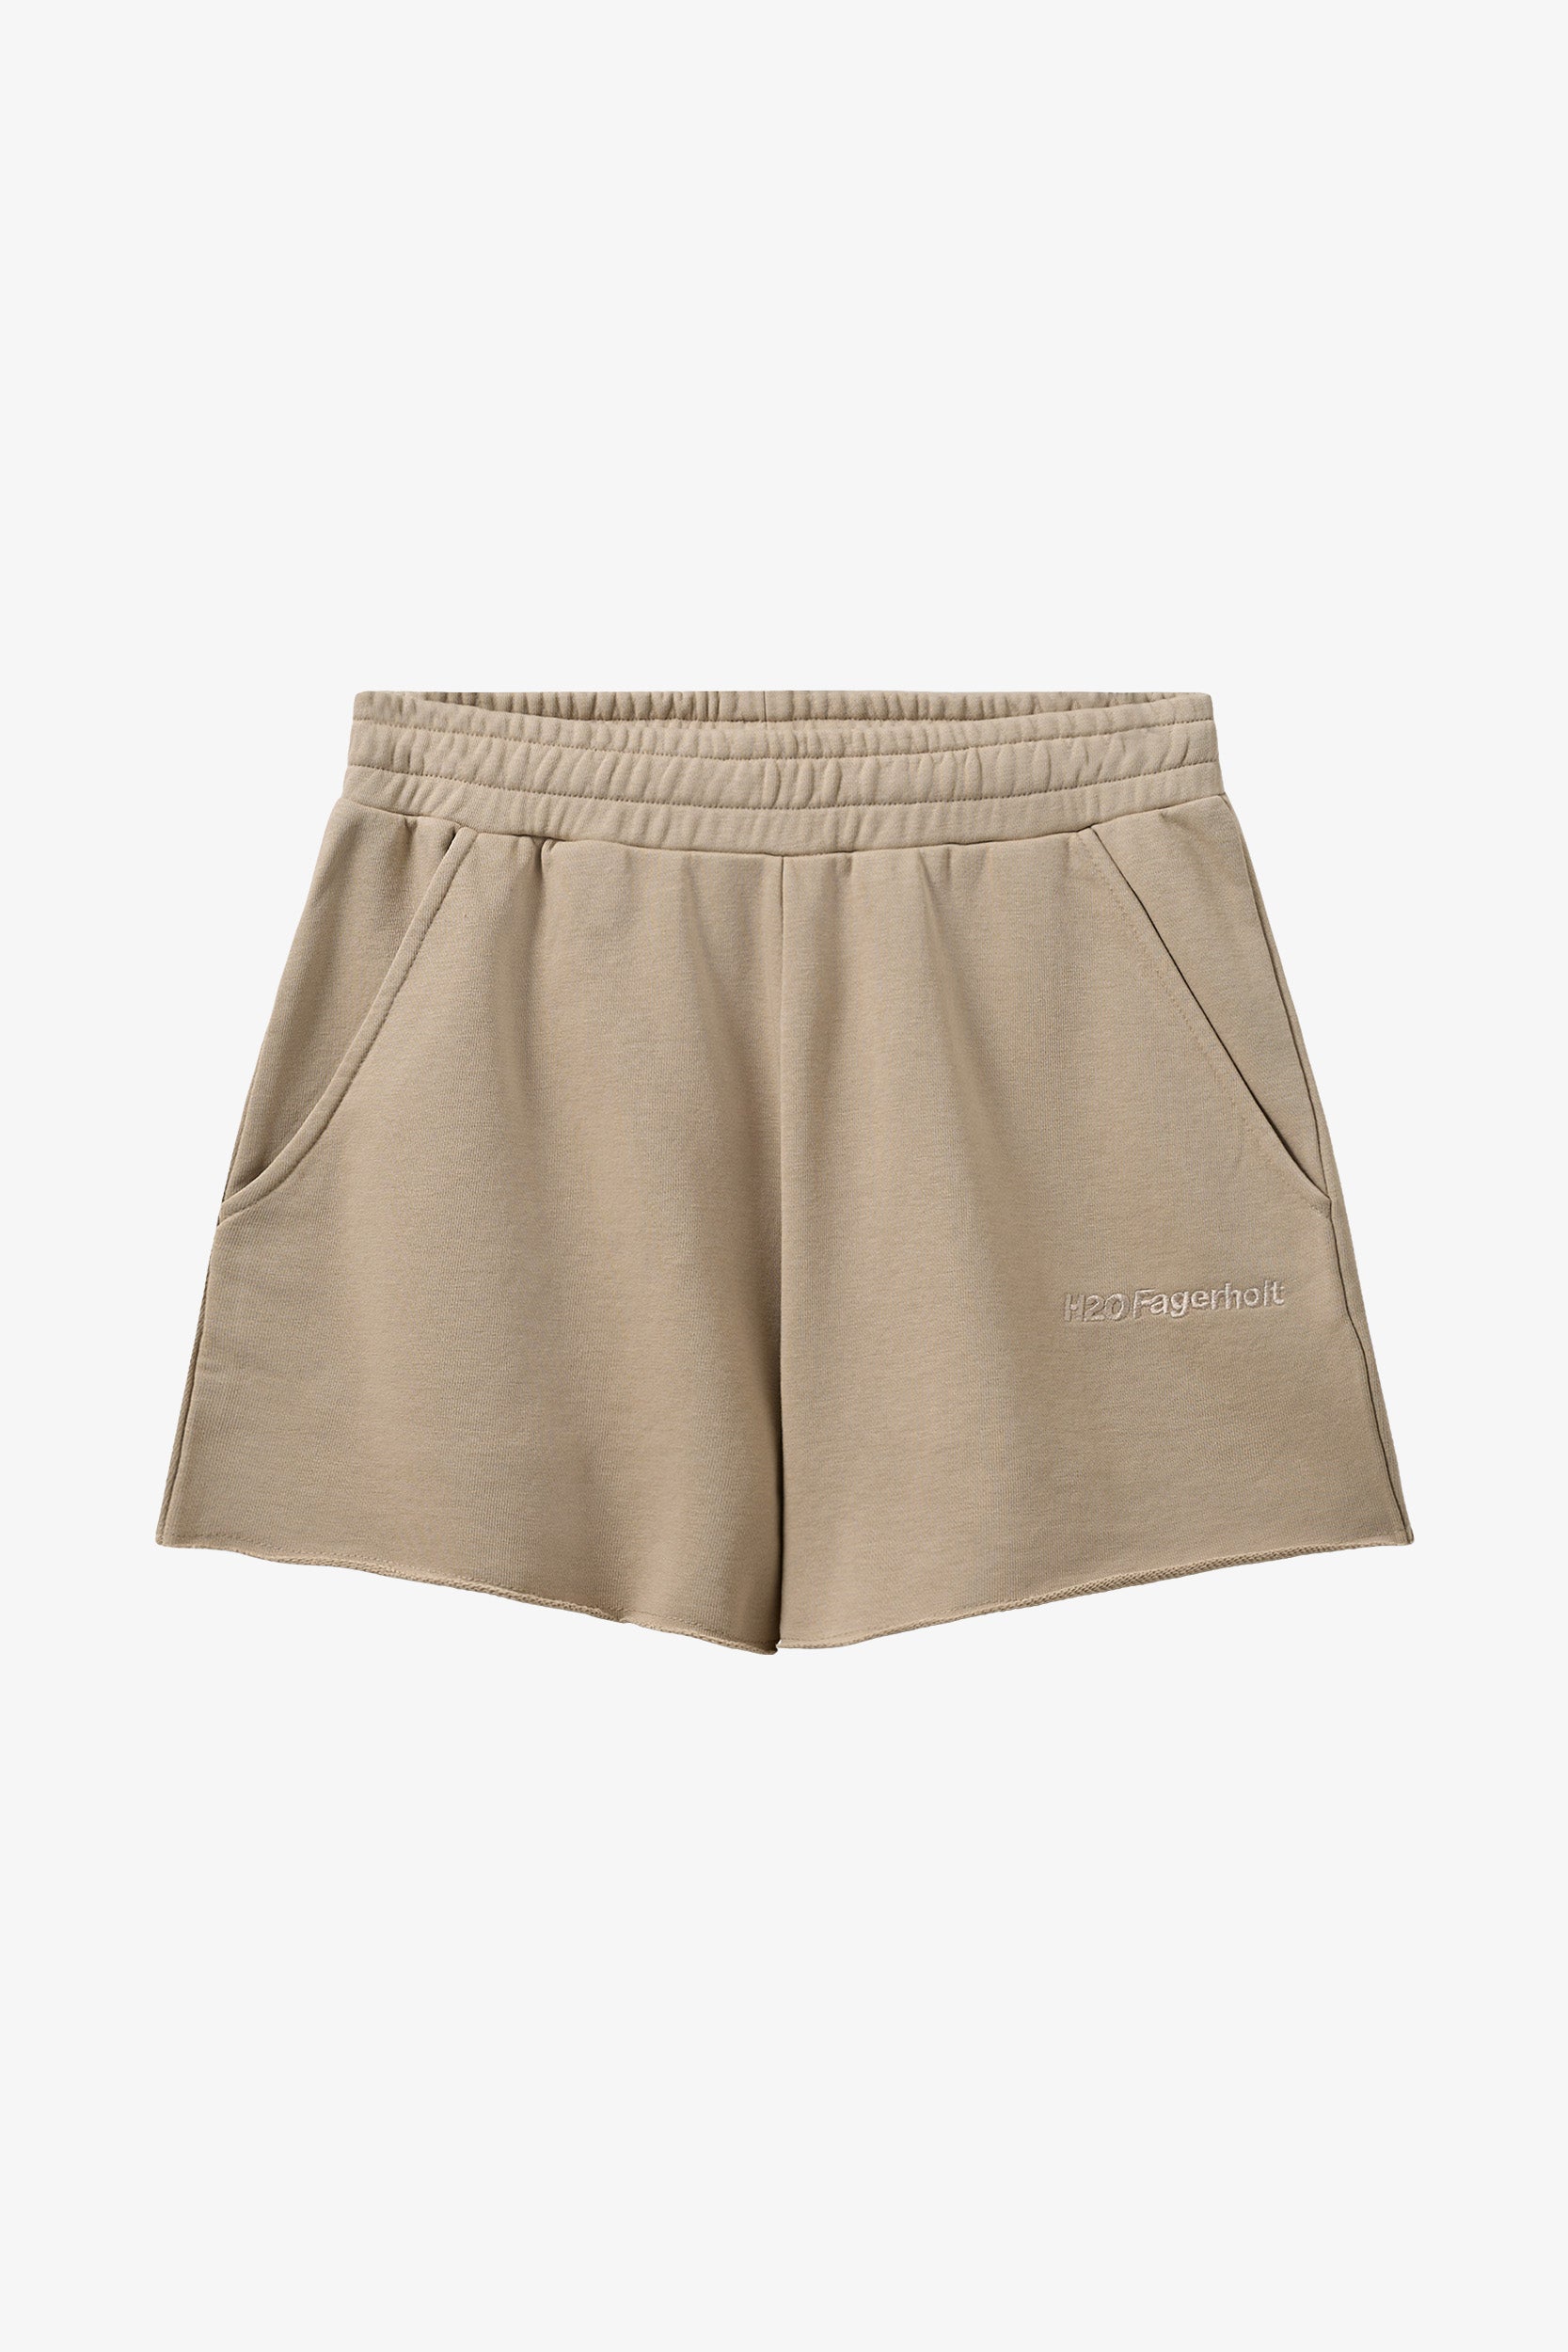 Pro Sweat Shorts - Creamy Grey